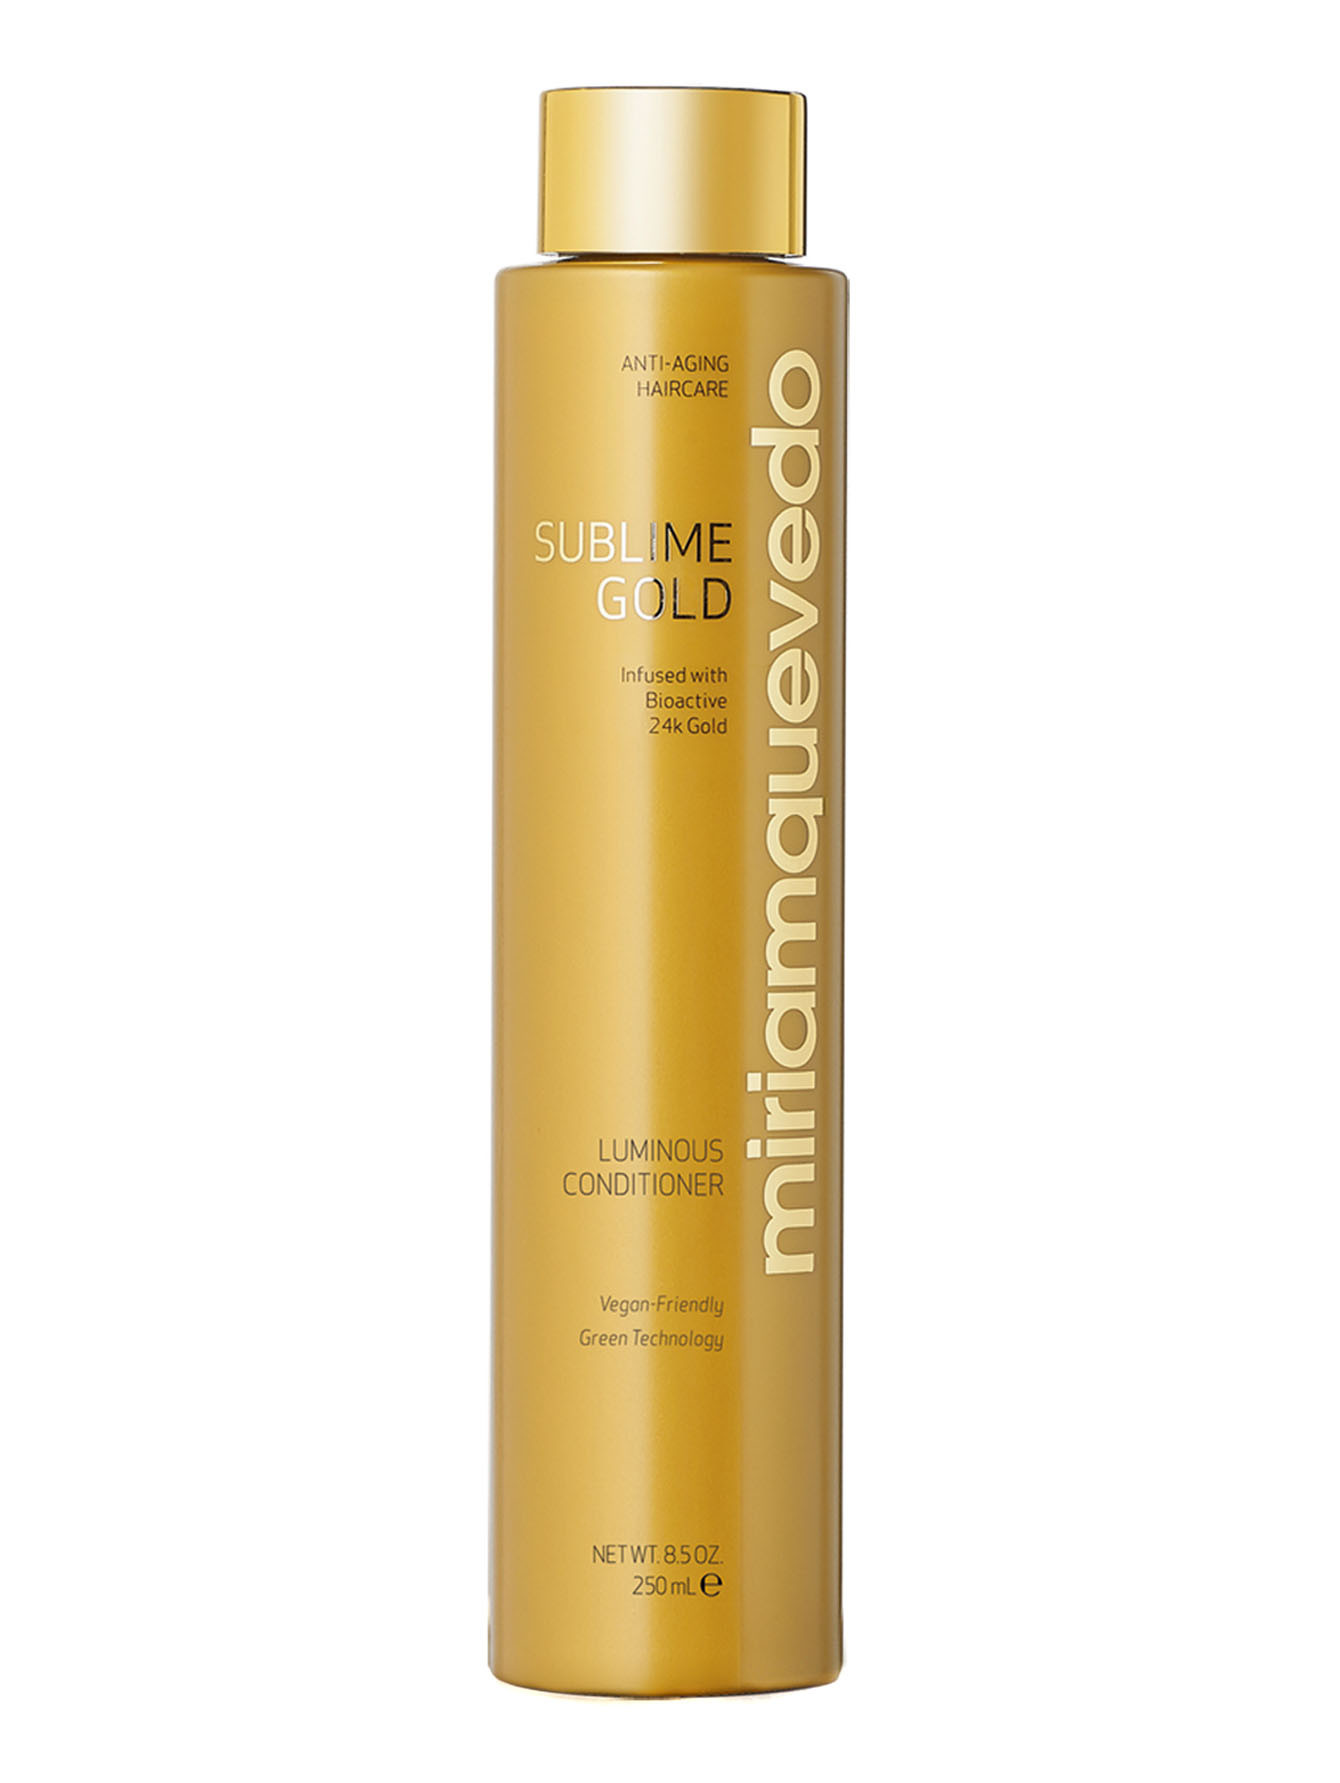 Кондиционер для сияния волос Sublime Gold Luminous Conditioner, 250 мл - Общий вид